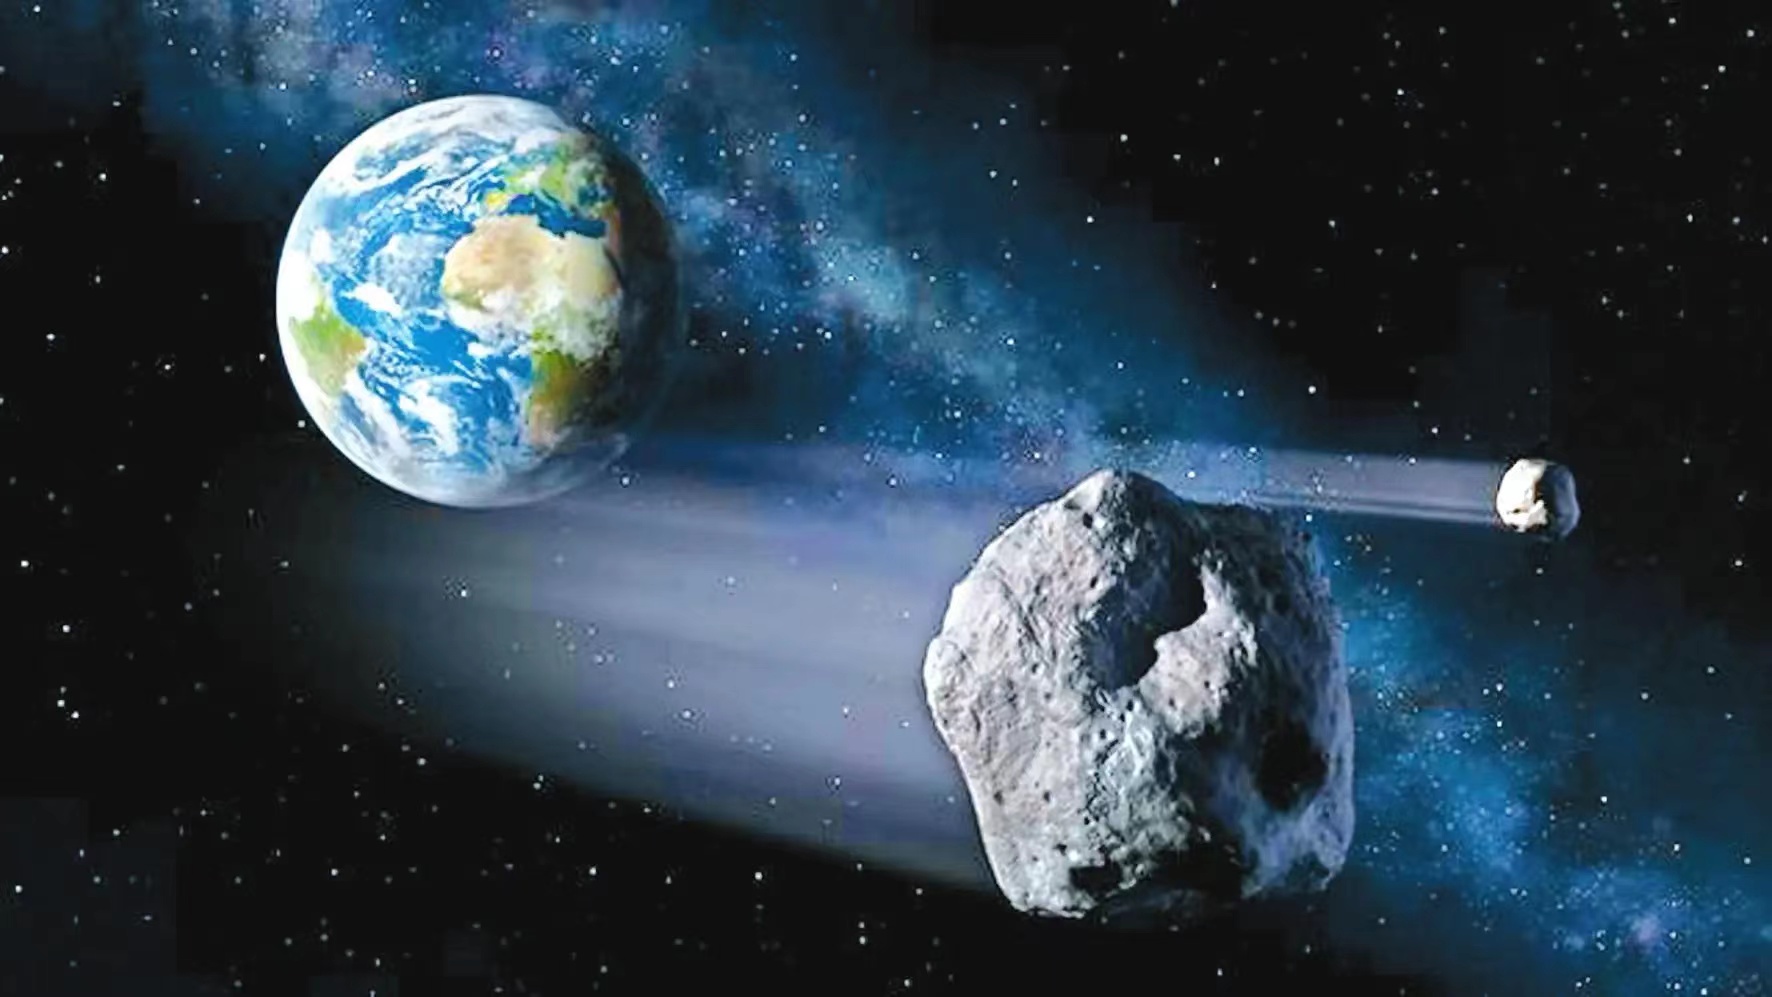 乘坐小行星遨游宇宙，是未来旅行社的重点项目（科技限制）